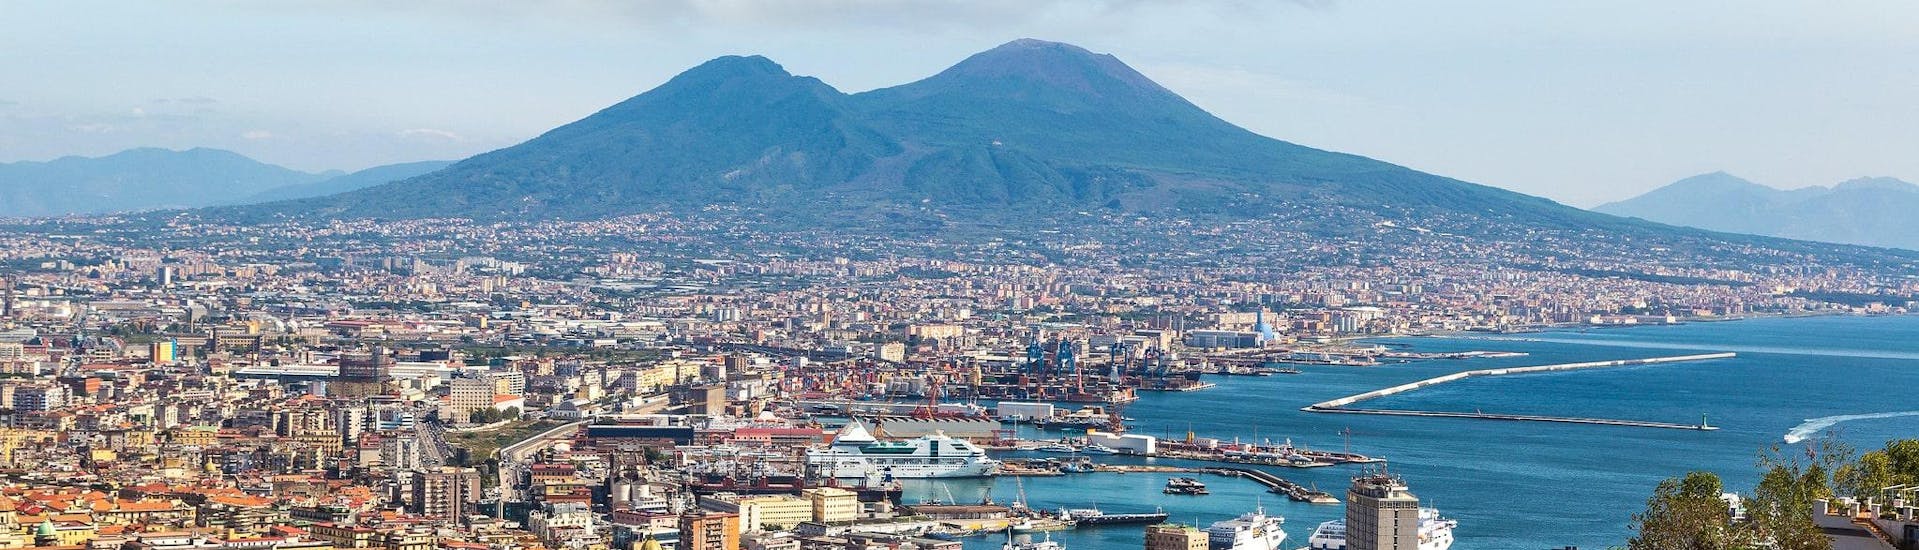 Blick auf die Stadt Neapel mit dem Vesuv im Hintergrund, von wo aus viele Bootstouren nach Capri und an die Amalfiküste starten.